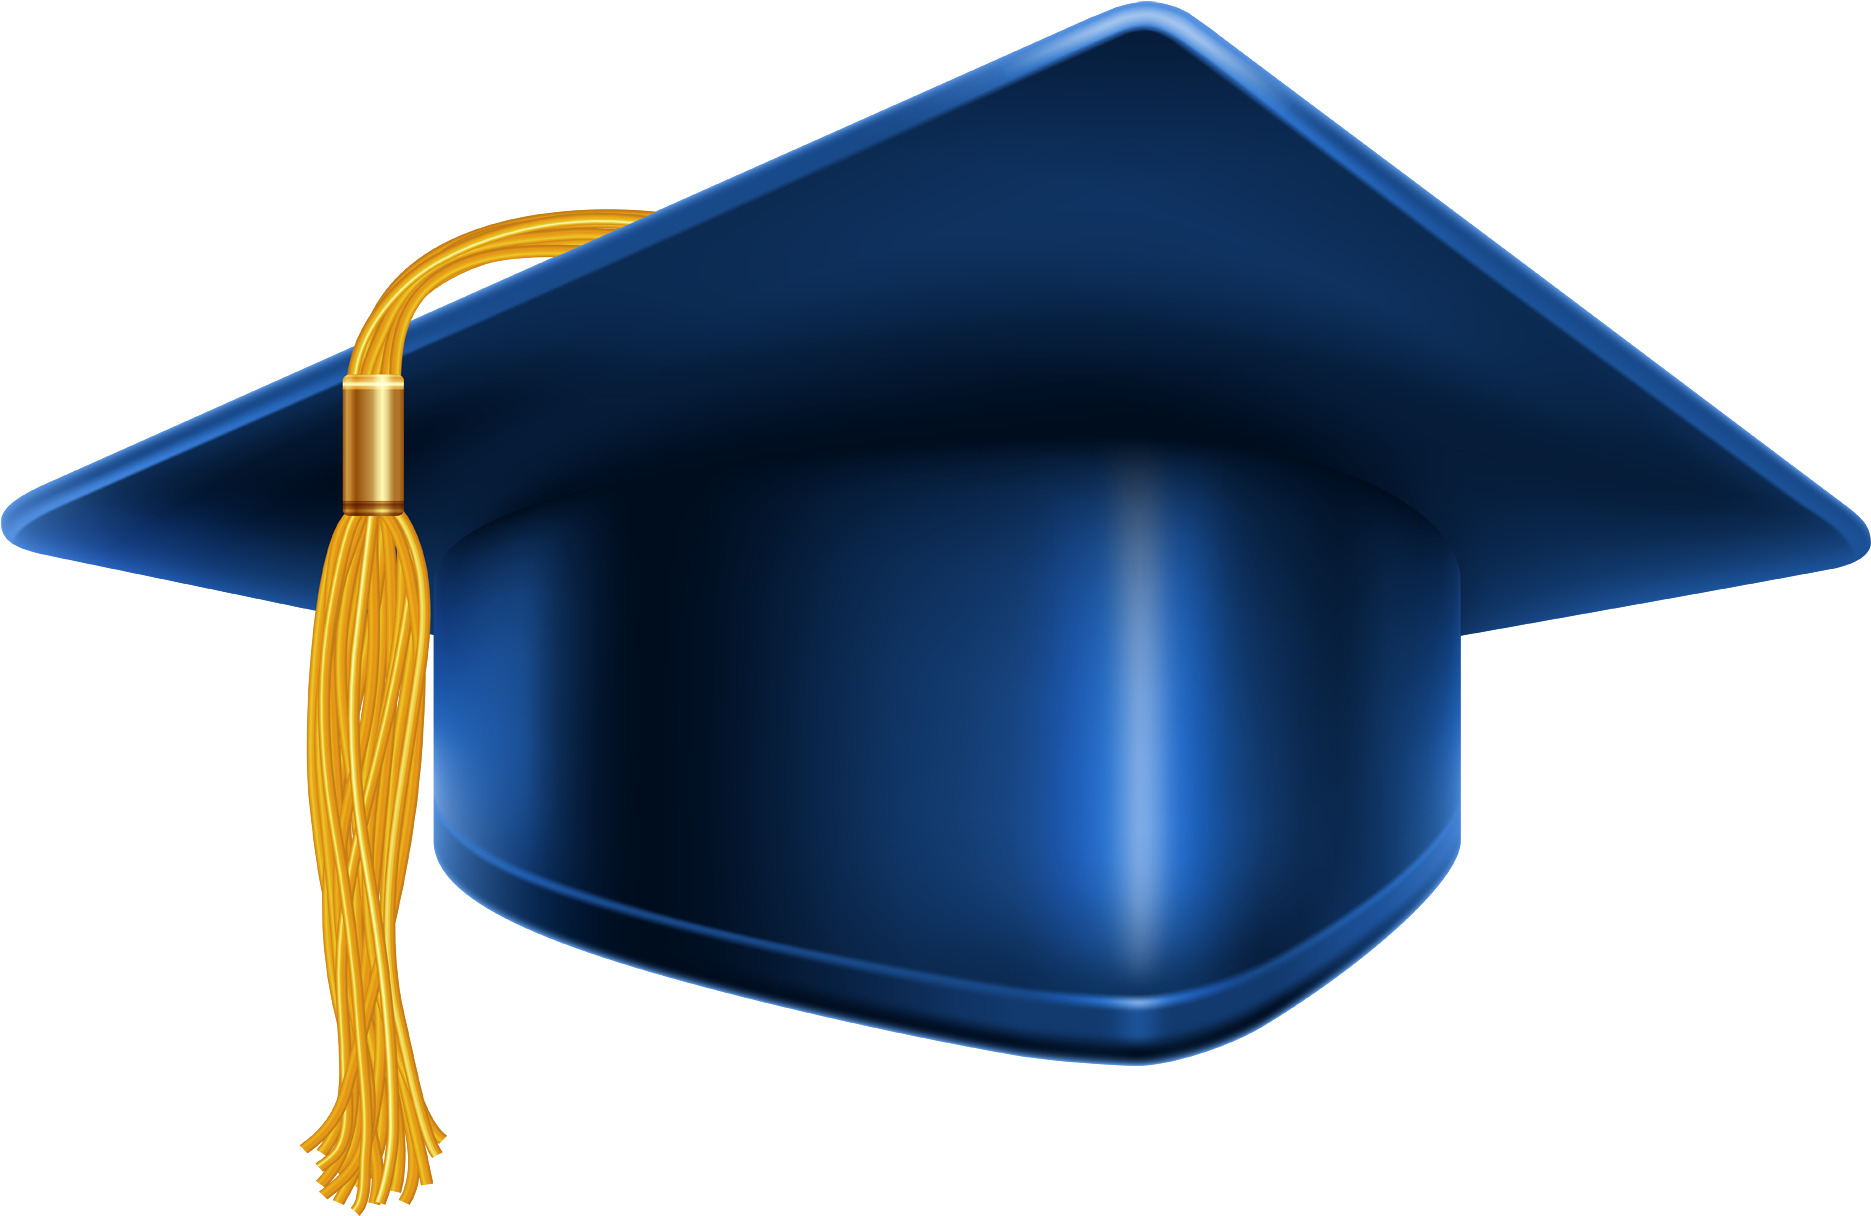 Blue Hd Graduation Cap Image - Blue Graduation Cap Png (1900x1233)